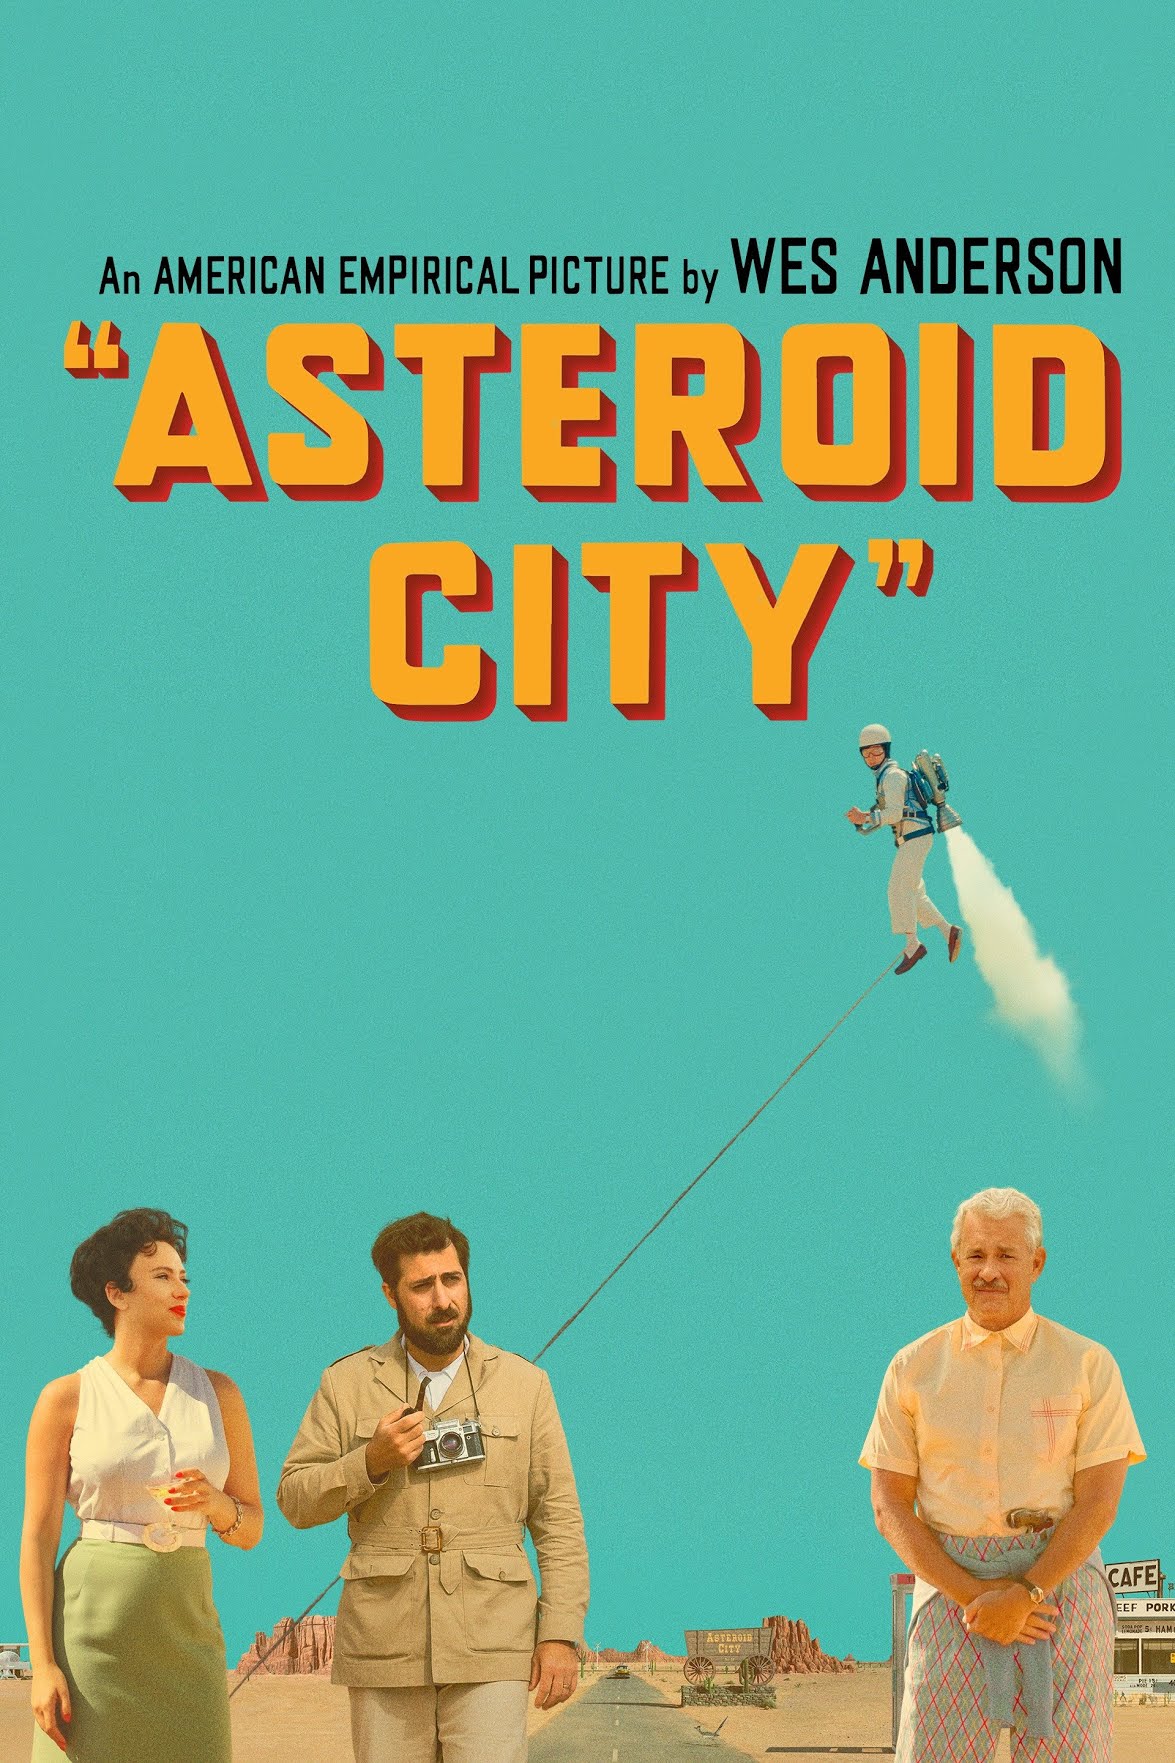 Astroid city